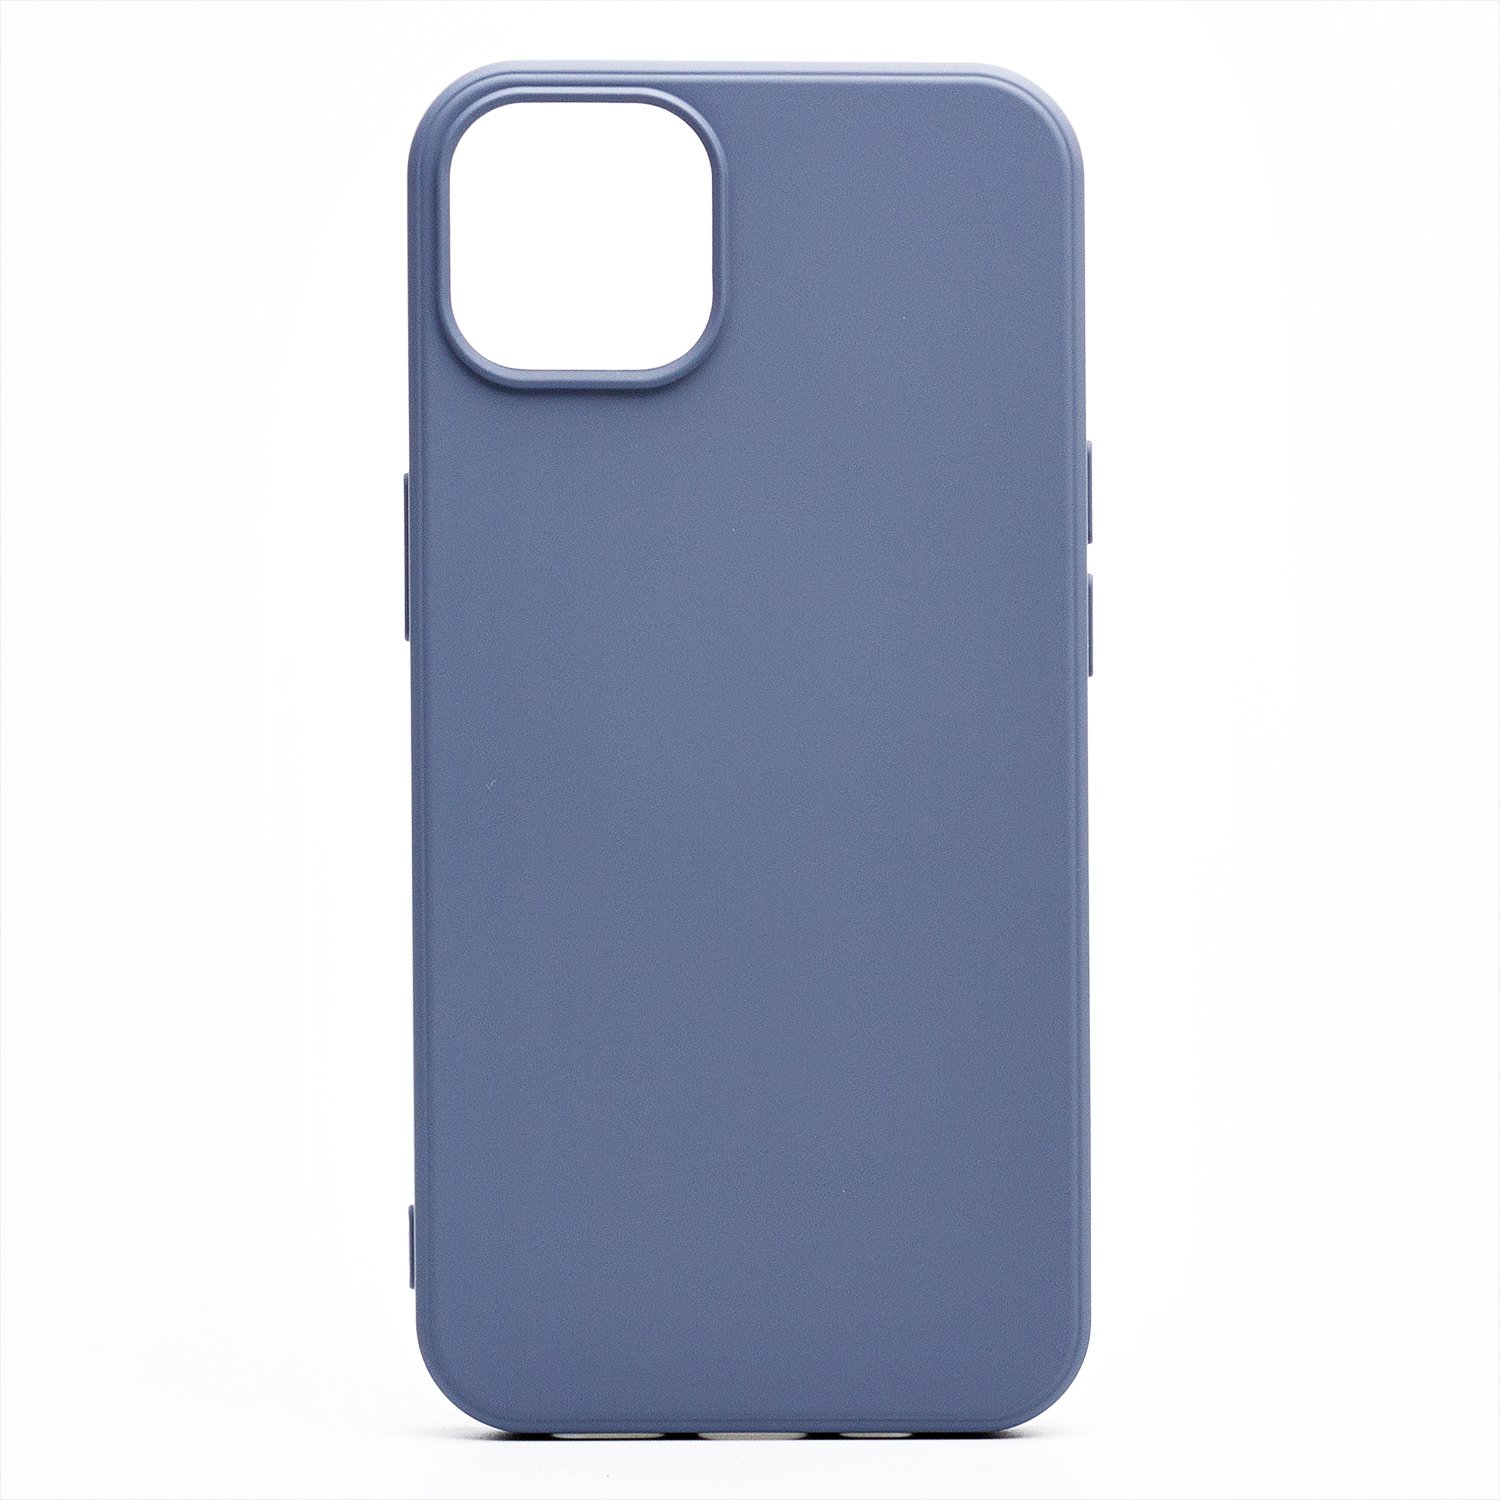 Чехол-накладка Activ Full Original Design для смартфона Apple iPhone 13 mini, силикон, серый (133236)